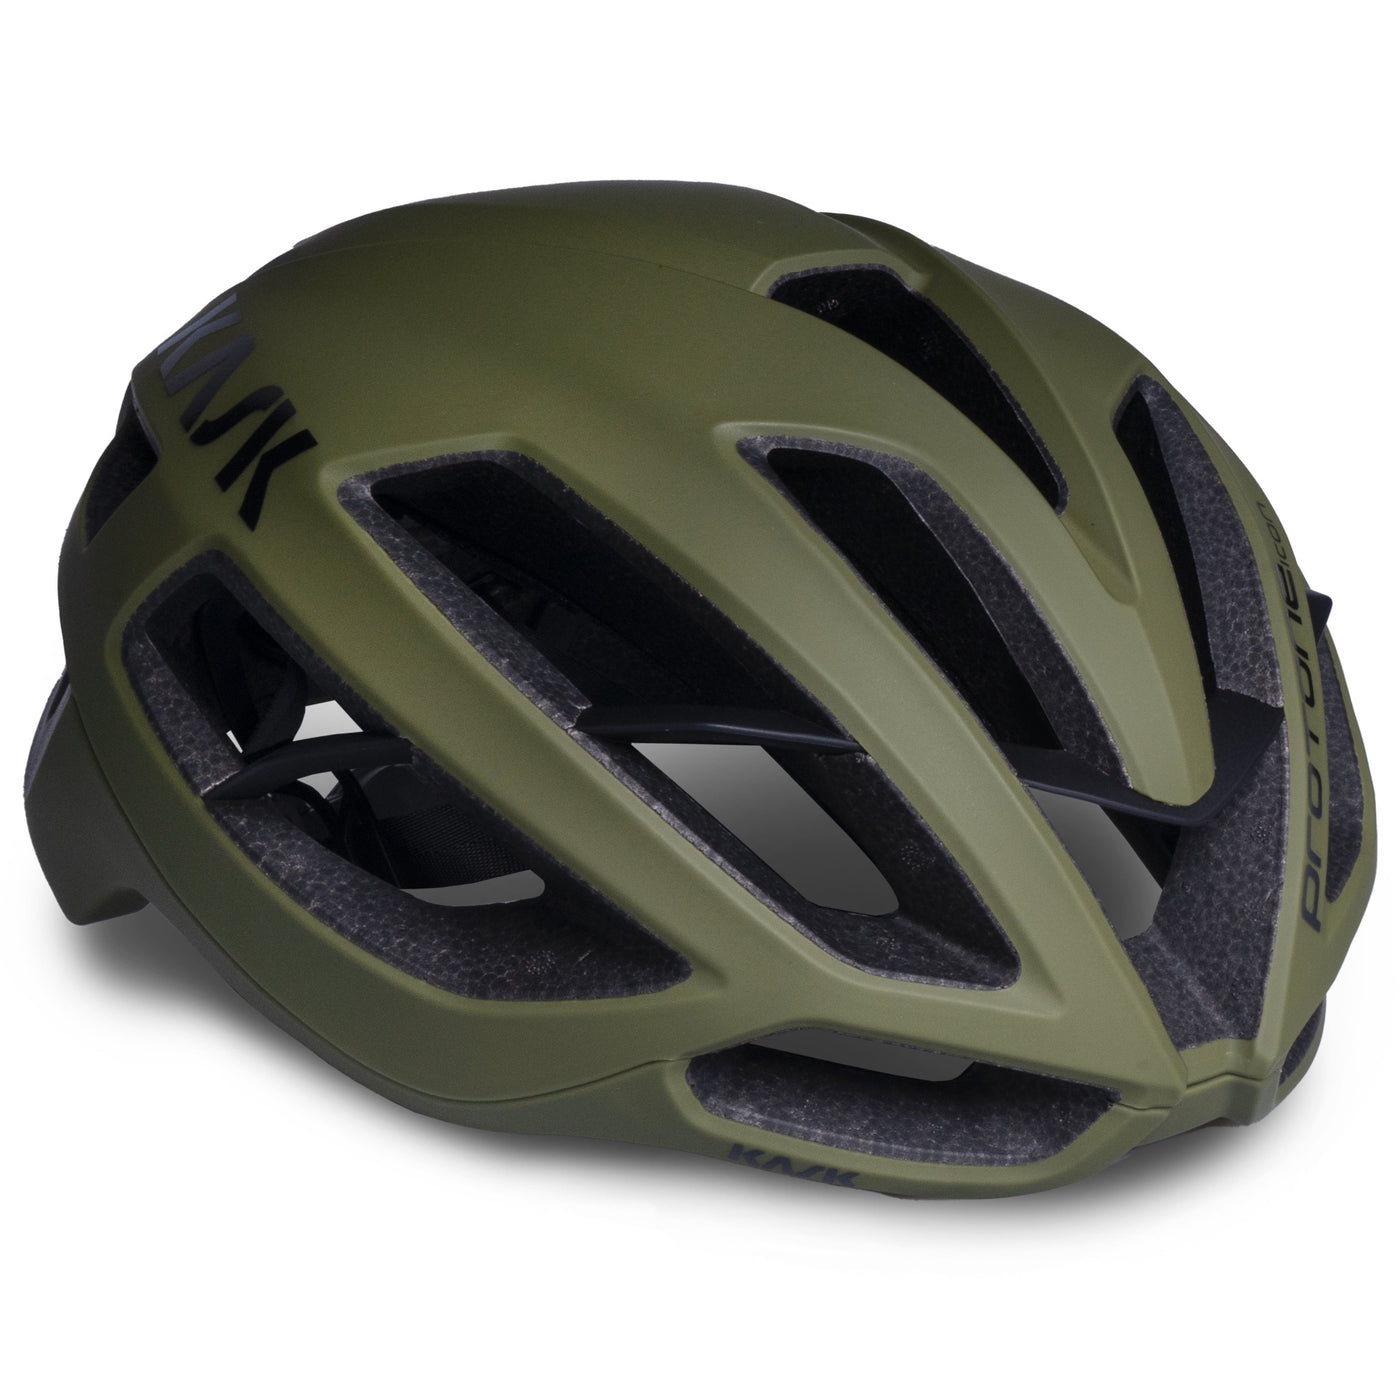 Cykelhjelm fra Kask. modellen er Protone Icon i mat oliven grøn med sort logo.